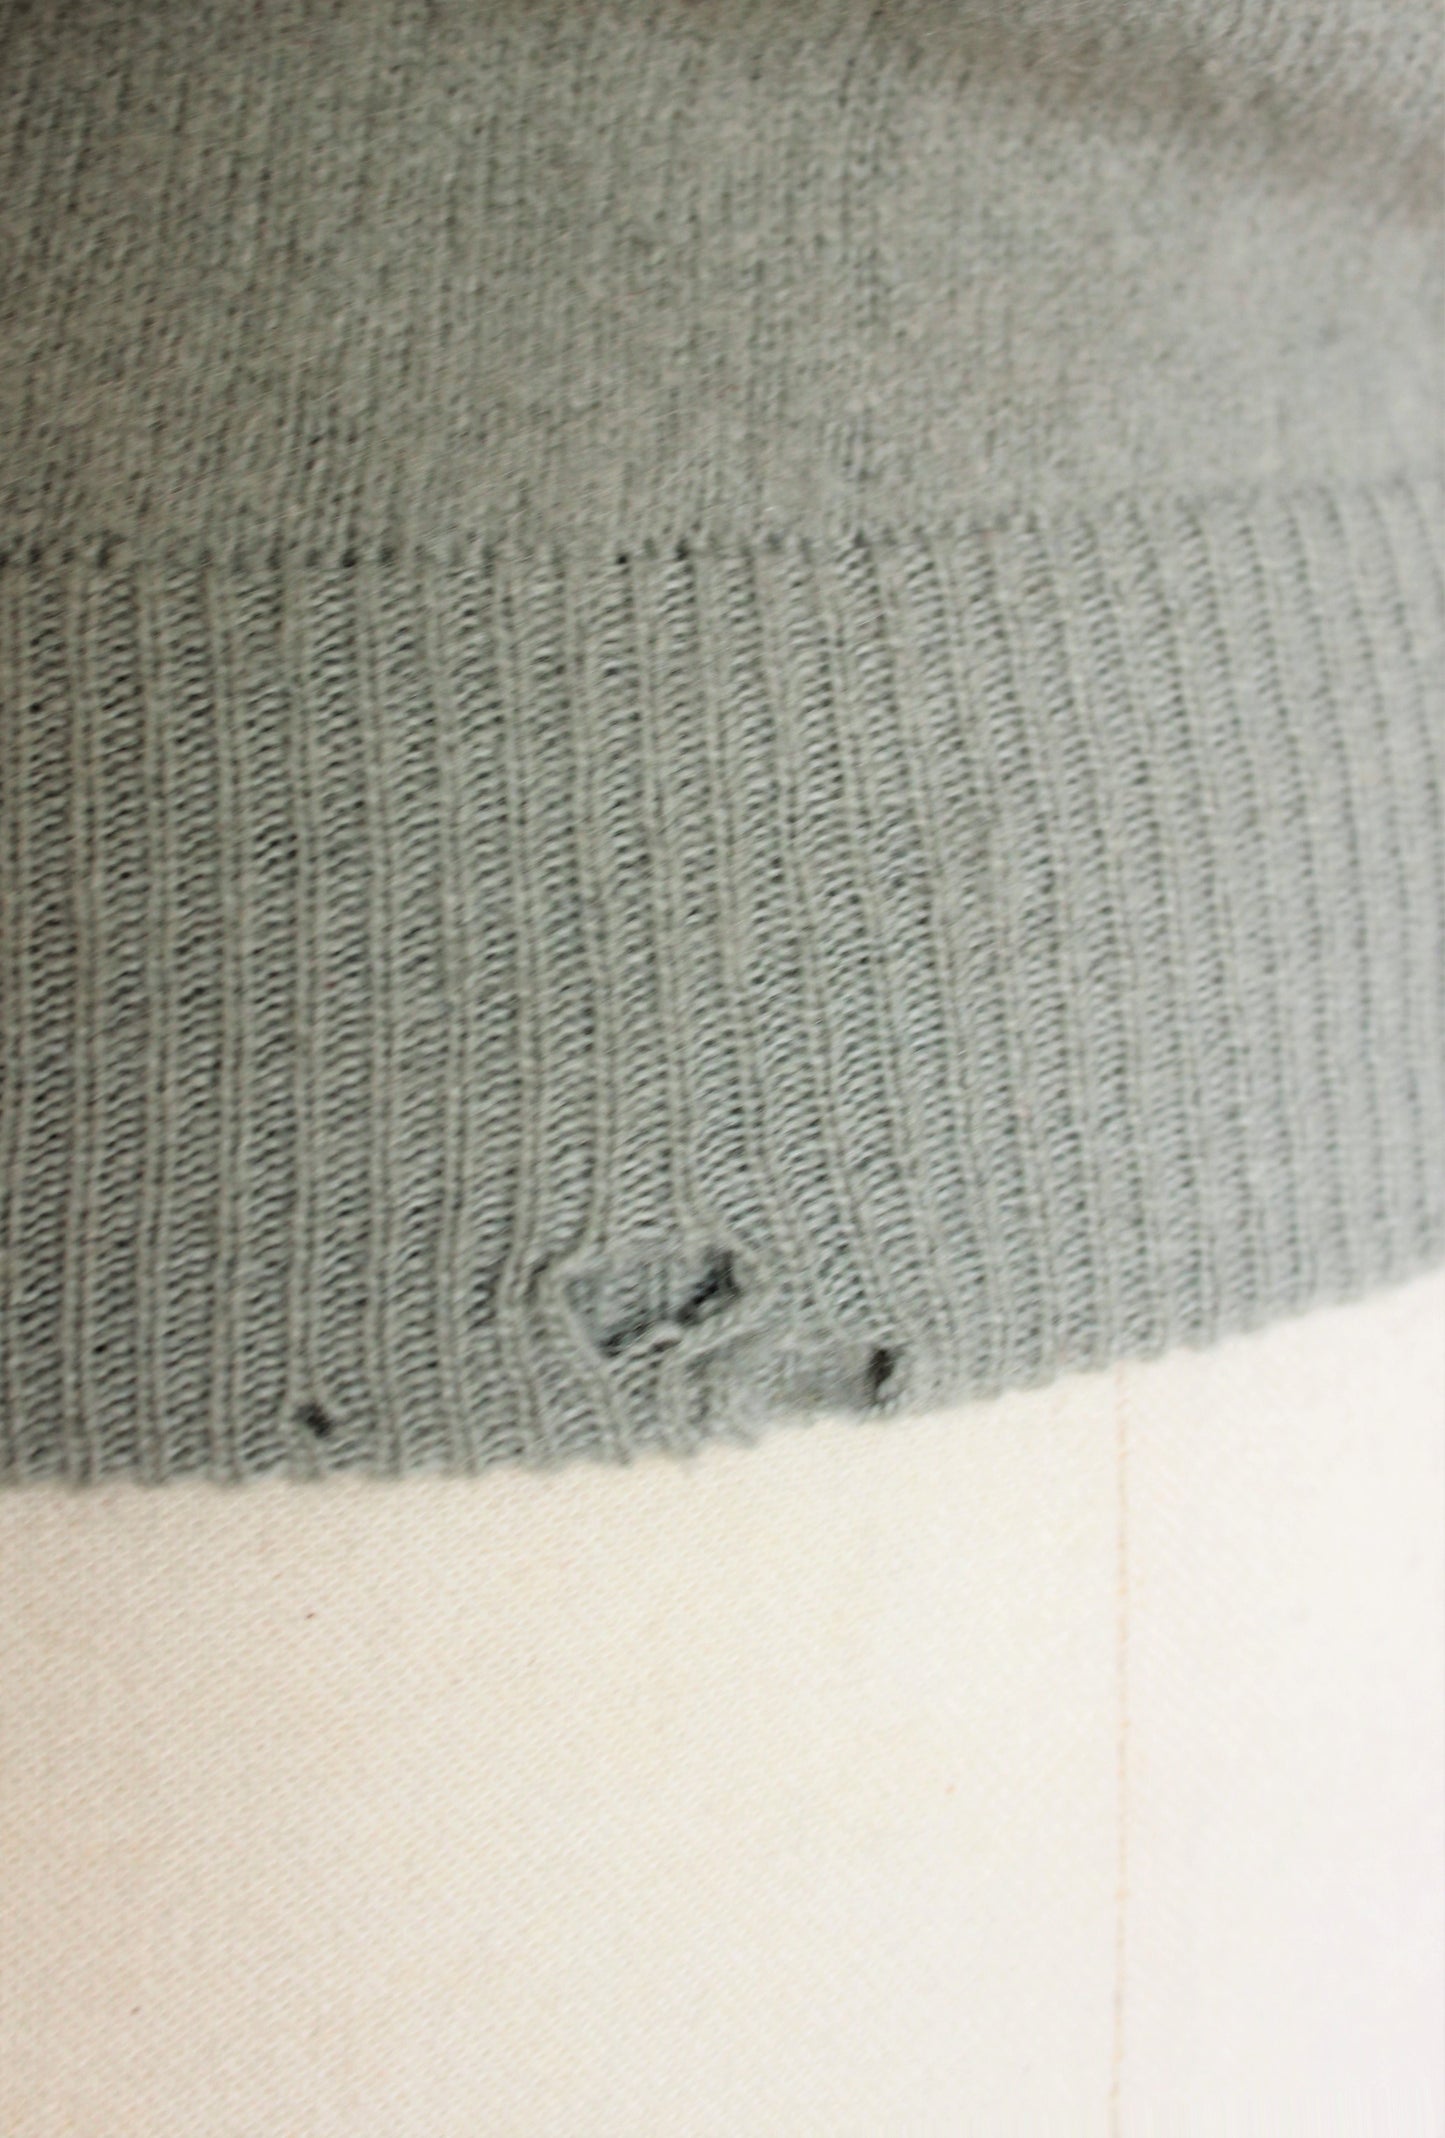 Vintage 1940s 1950s Wool Cardigan Sweater – Toadstool Farm Vintage